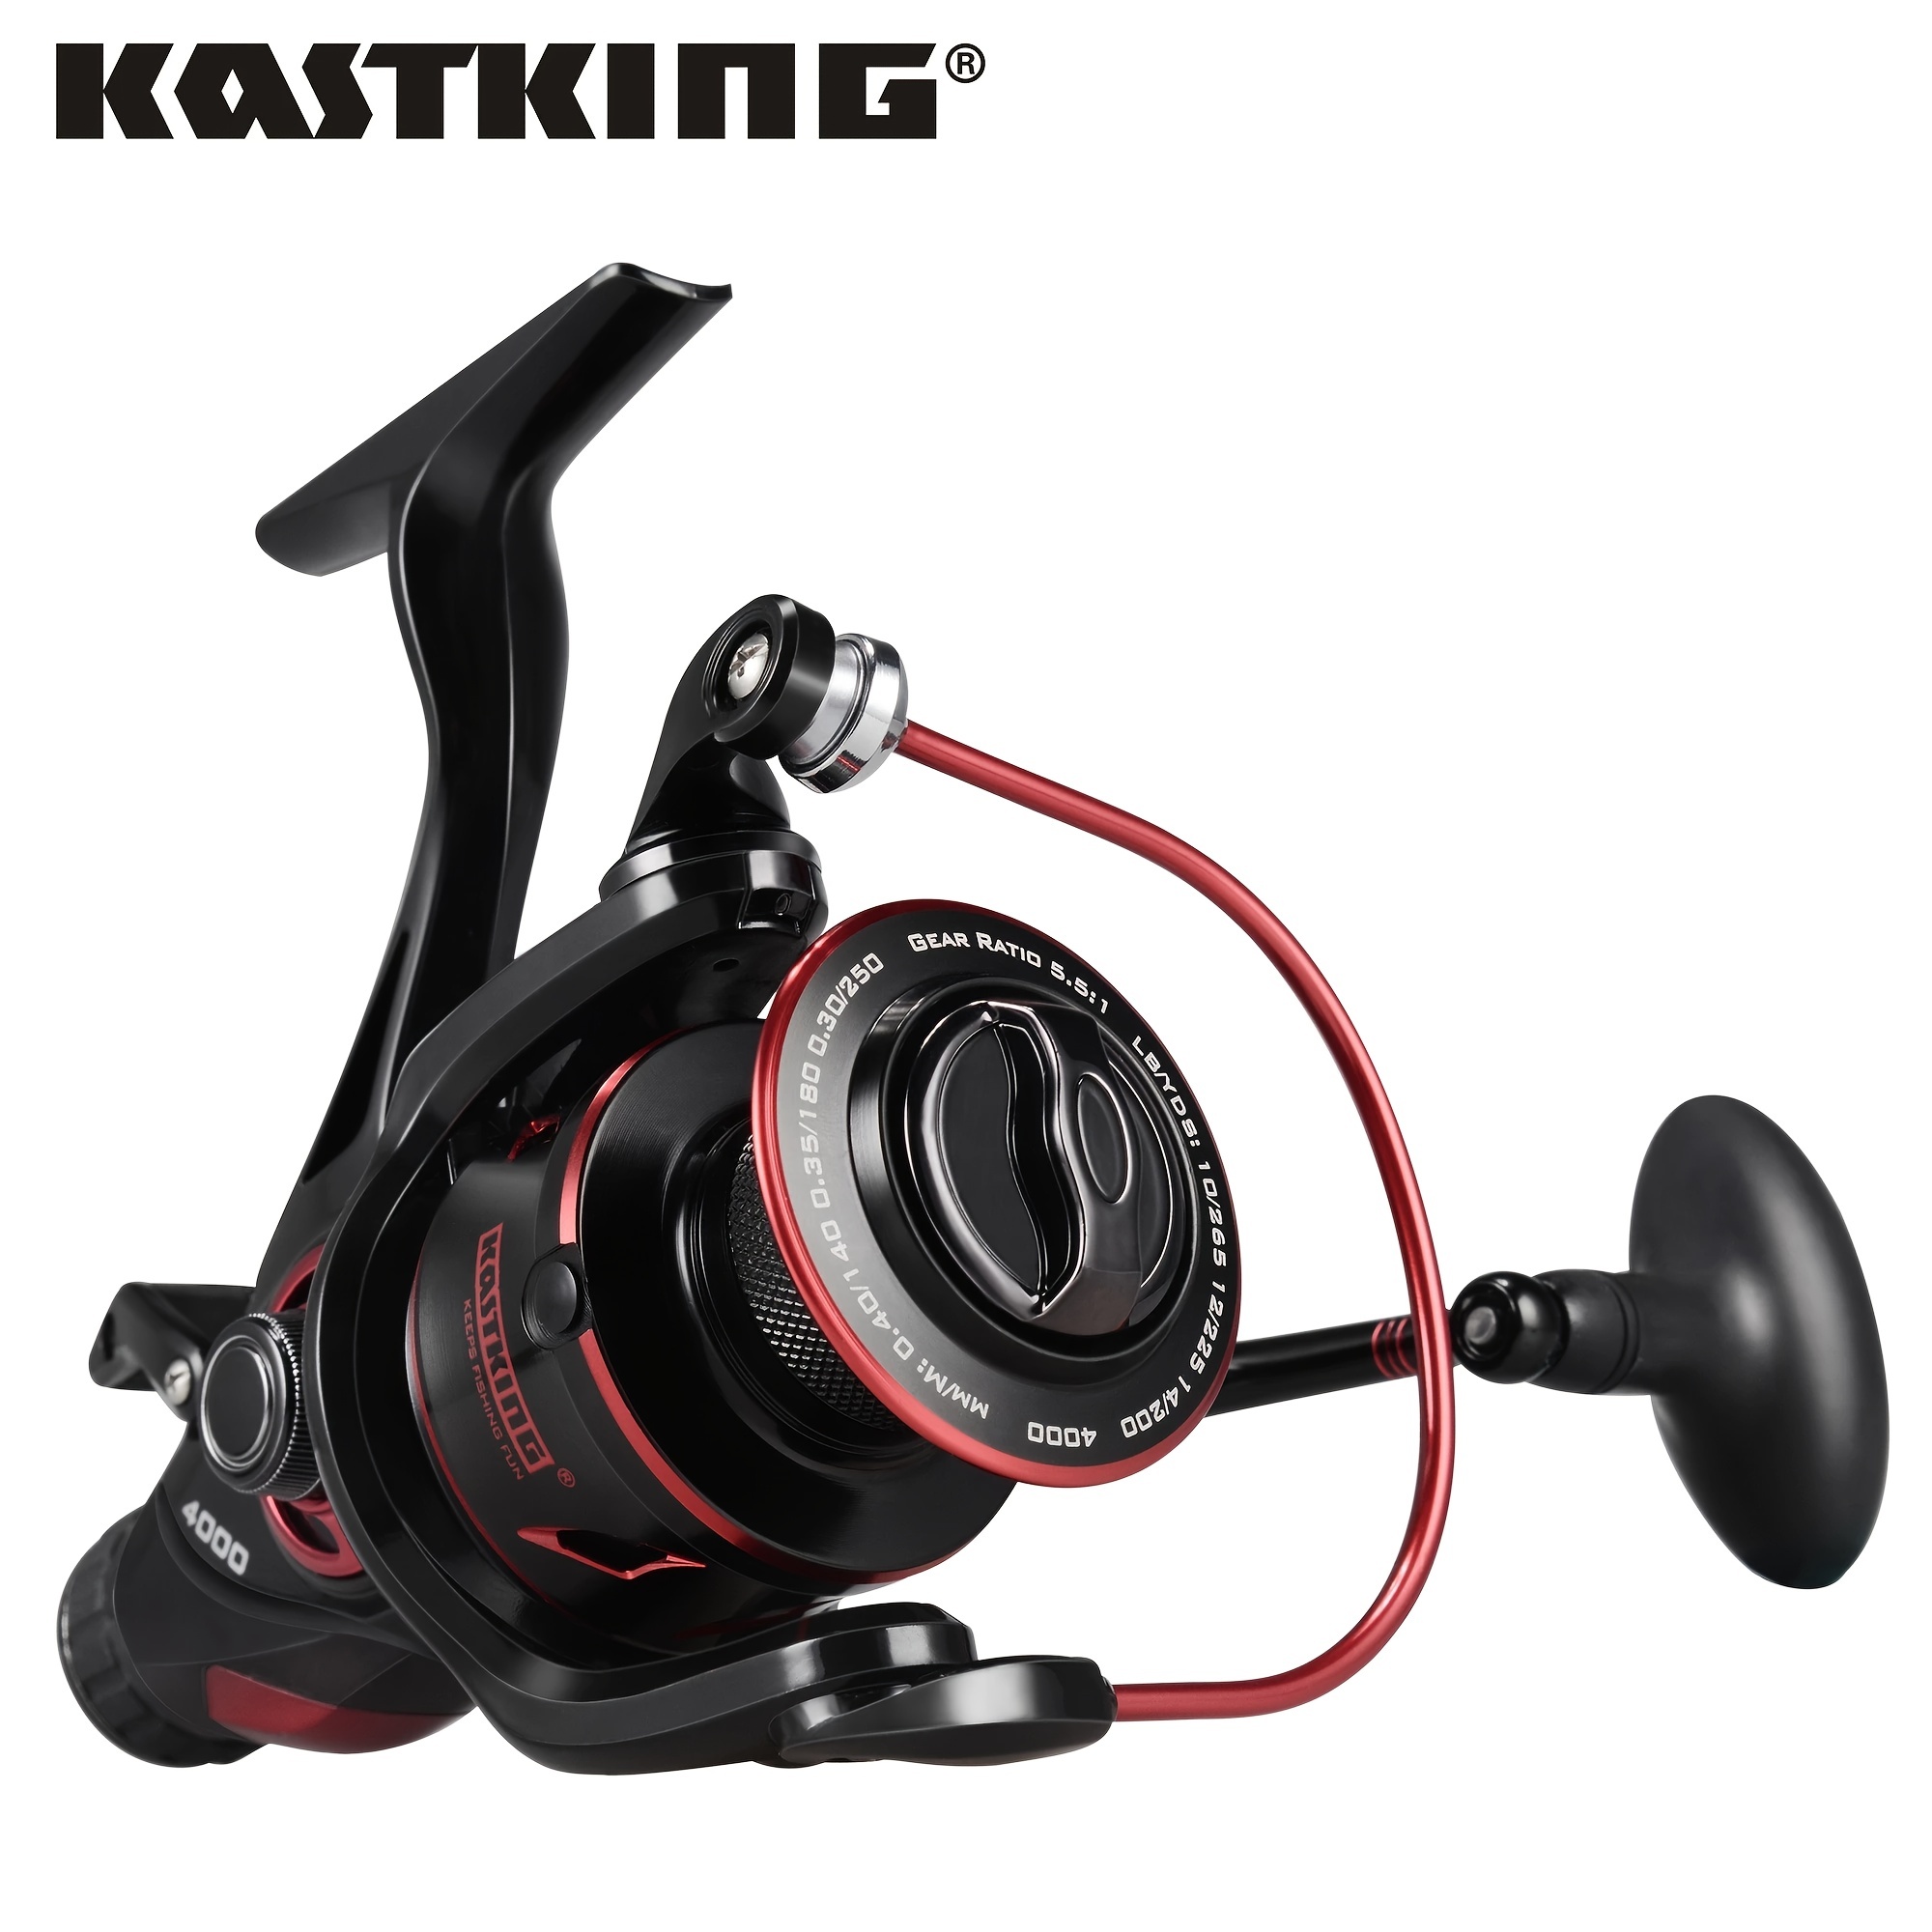 Kastking Megatron Spinning Fishing Reel Max Drag 7+1 Ball - Temu